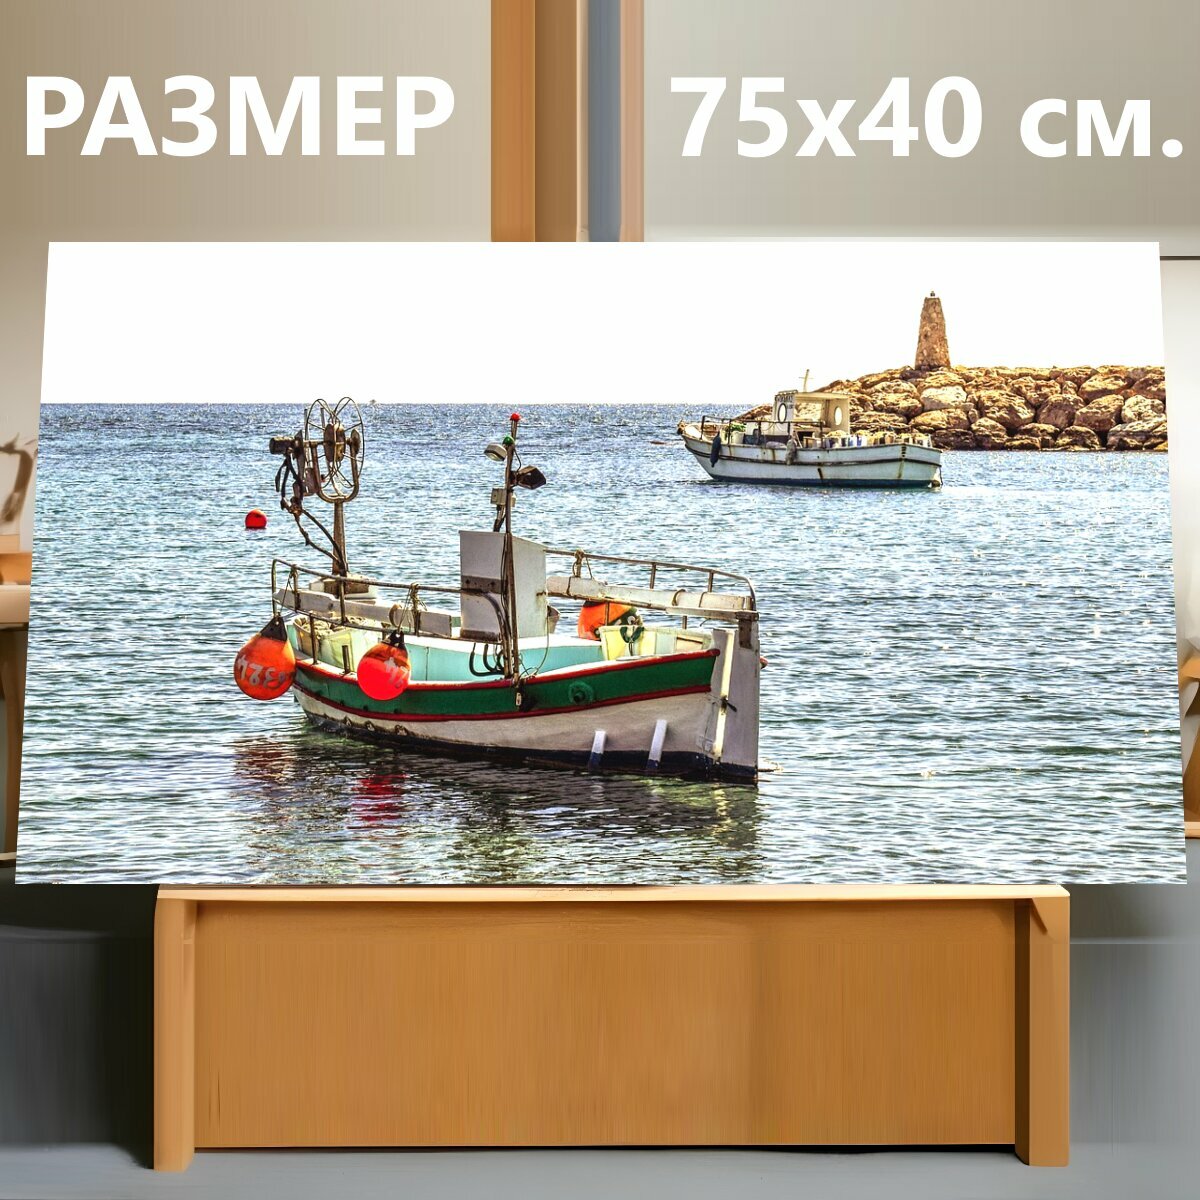 Картина на холсте "Лодка, гавань, приют для рыбалки" на подрамнике 75х40 см. для интерьера